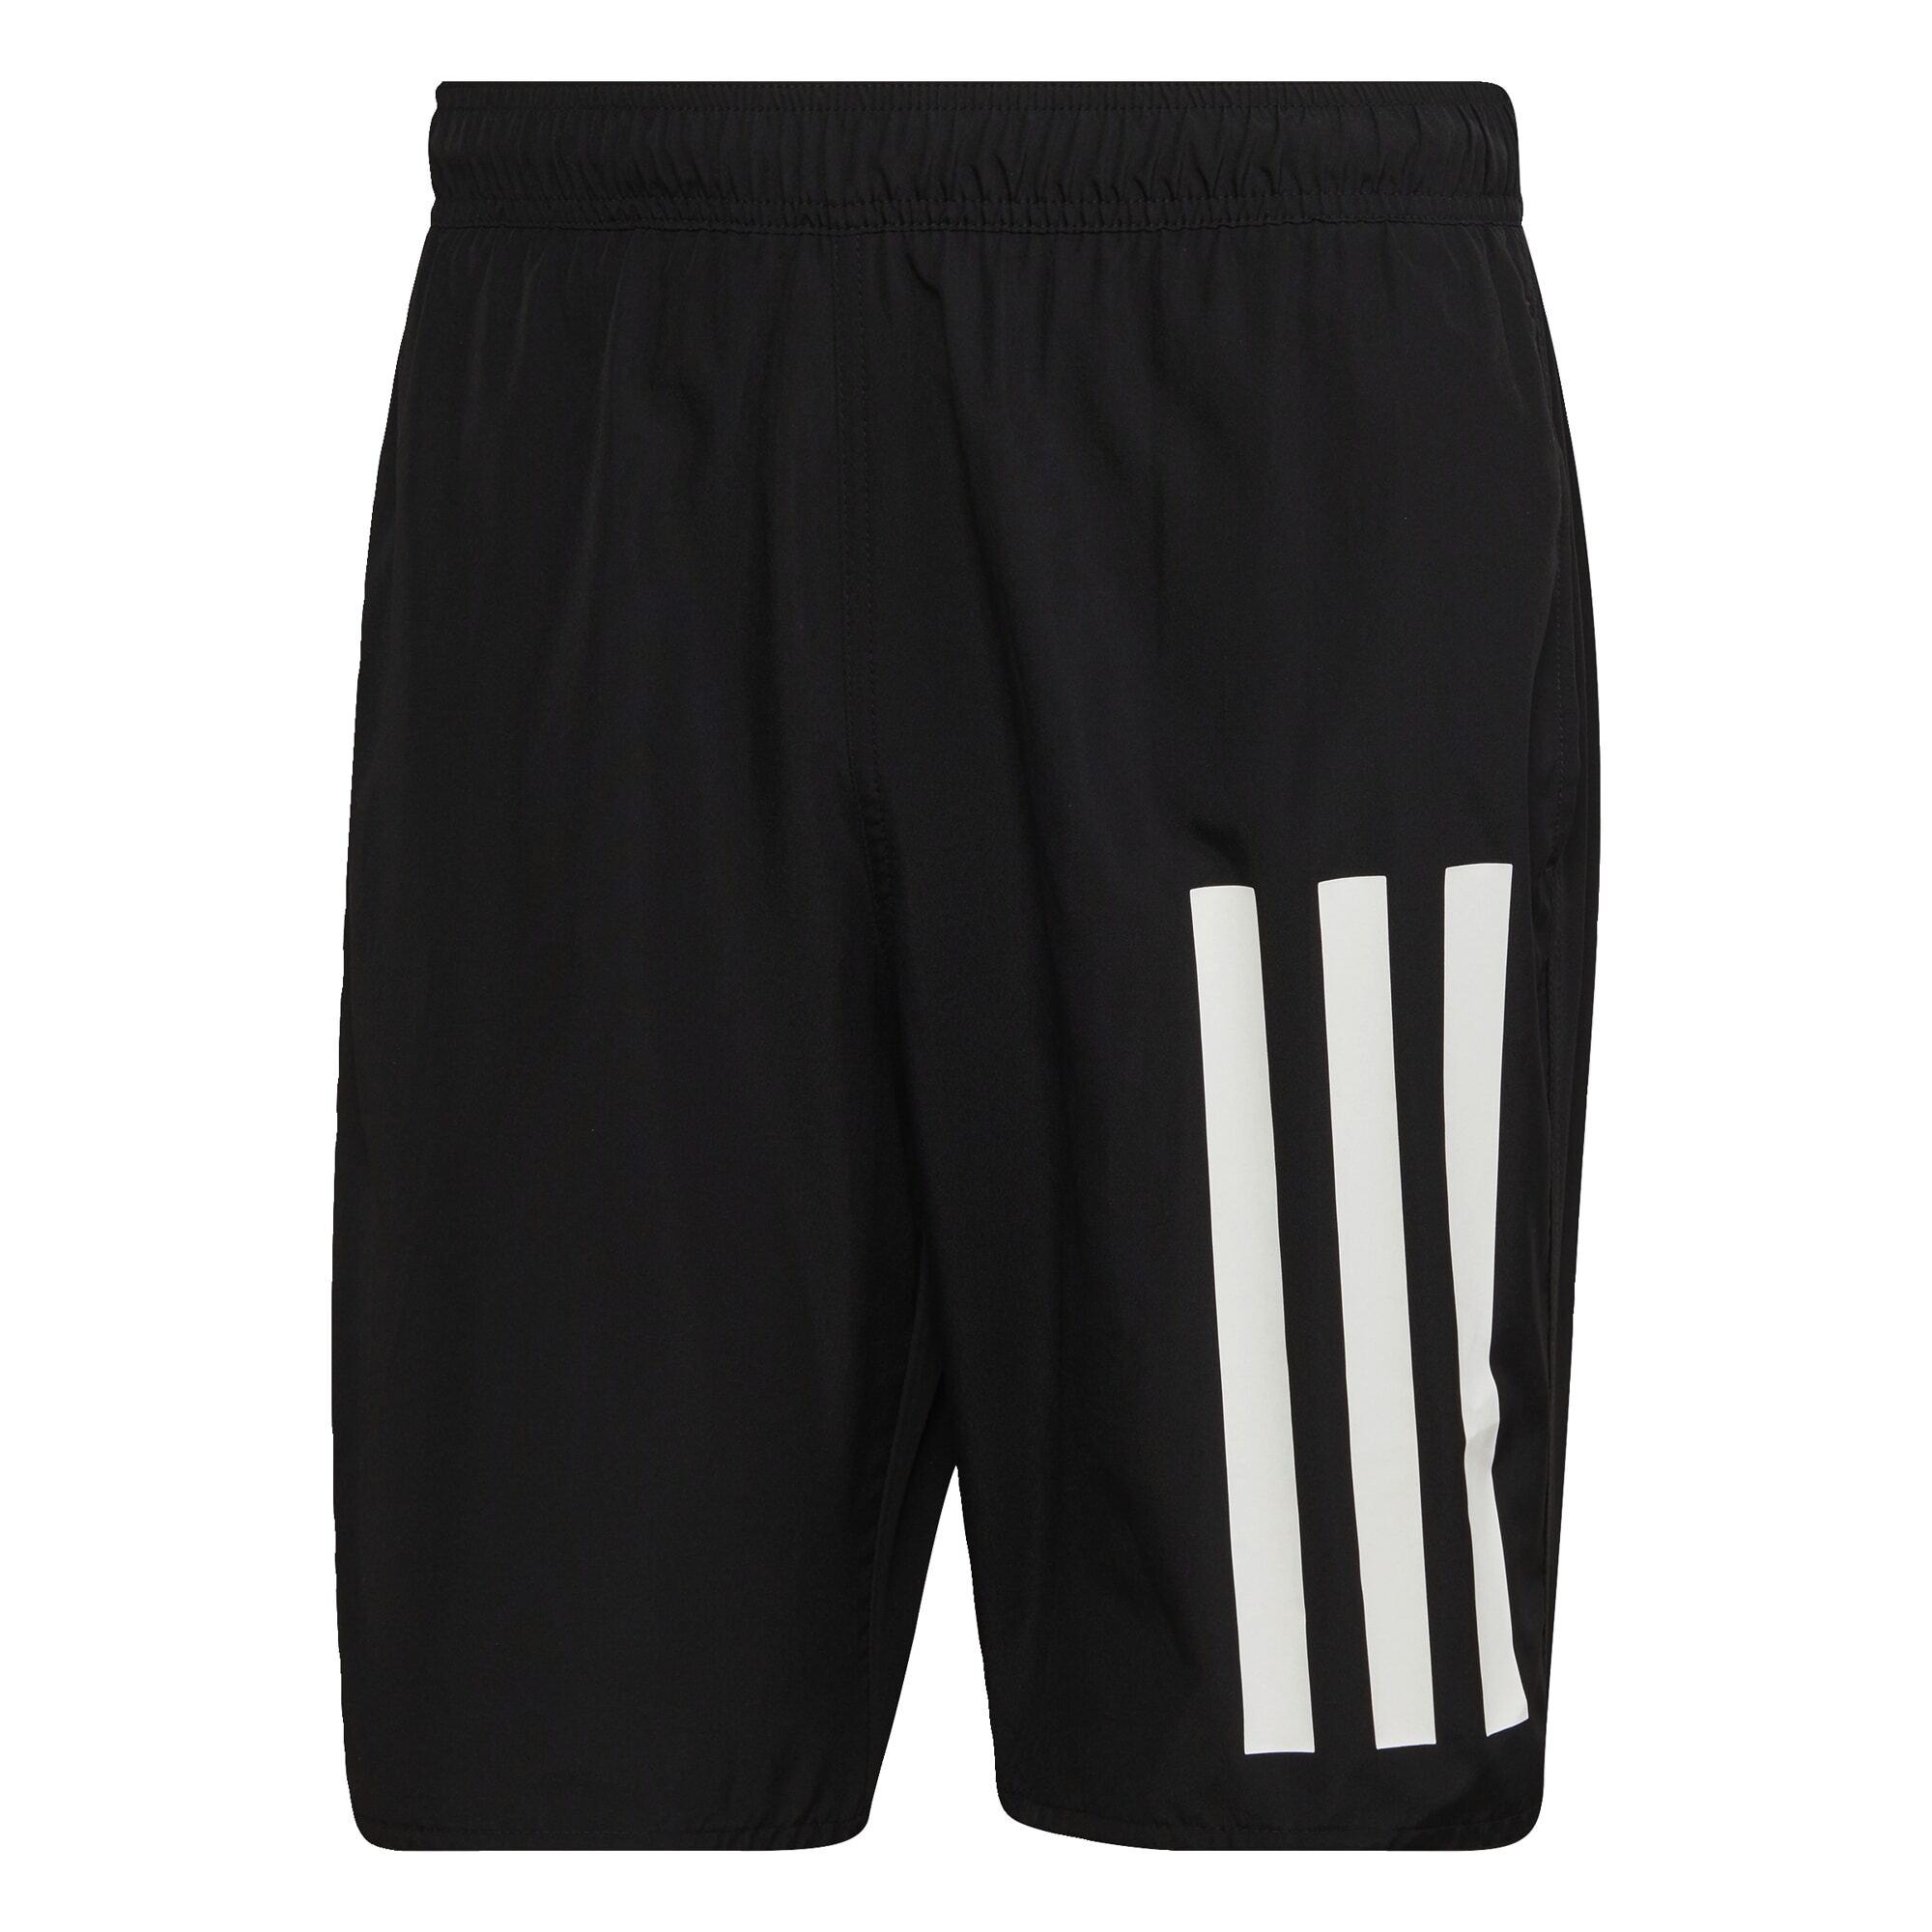 Adidas Classic kaufen Shop Online Length / White Black im Herren SportScheck Badeshorts Badehose 3-Streifen von